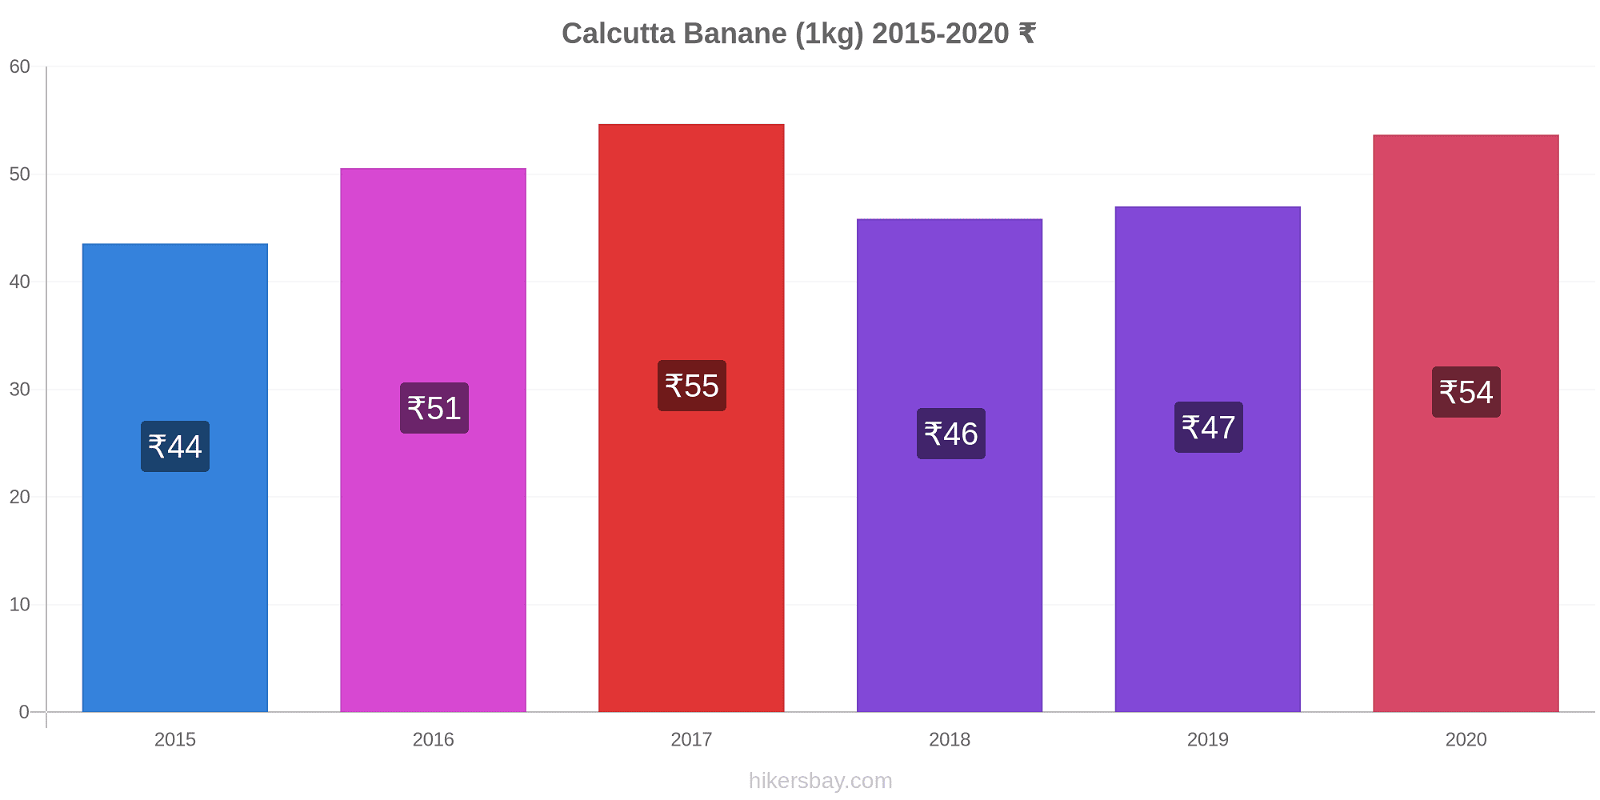 Calcutta variazioni di prezzo Banana (1kg) hikersbay.com